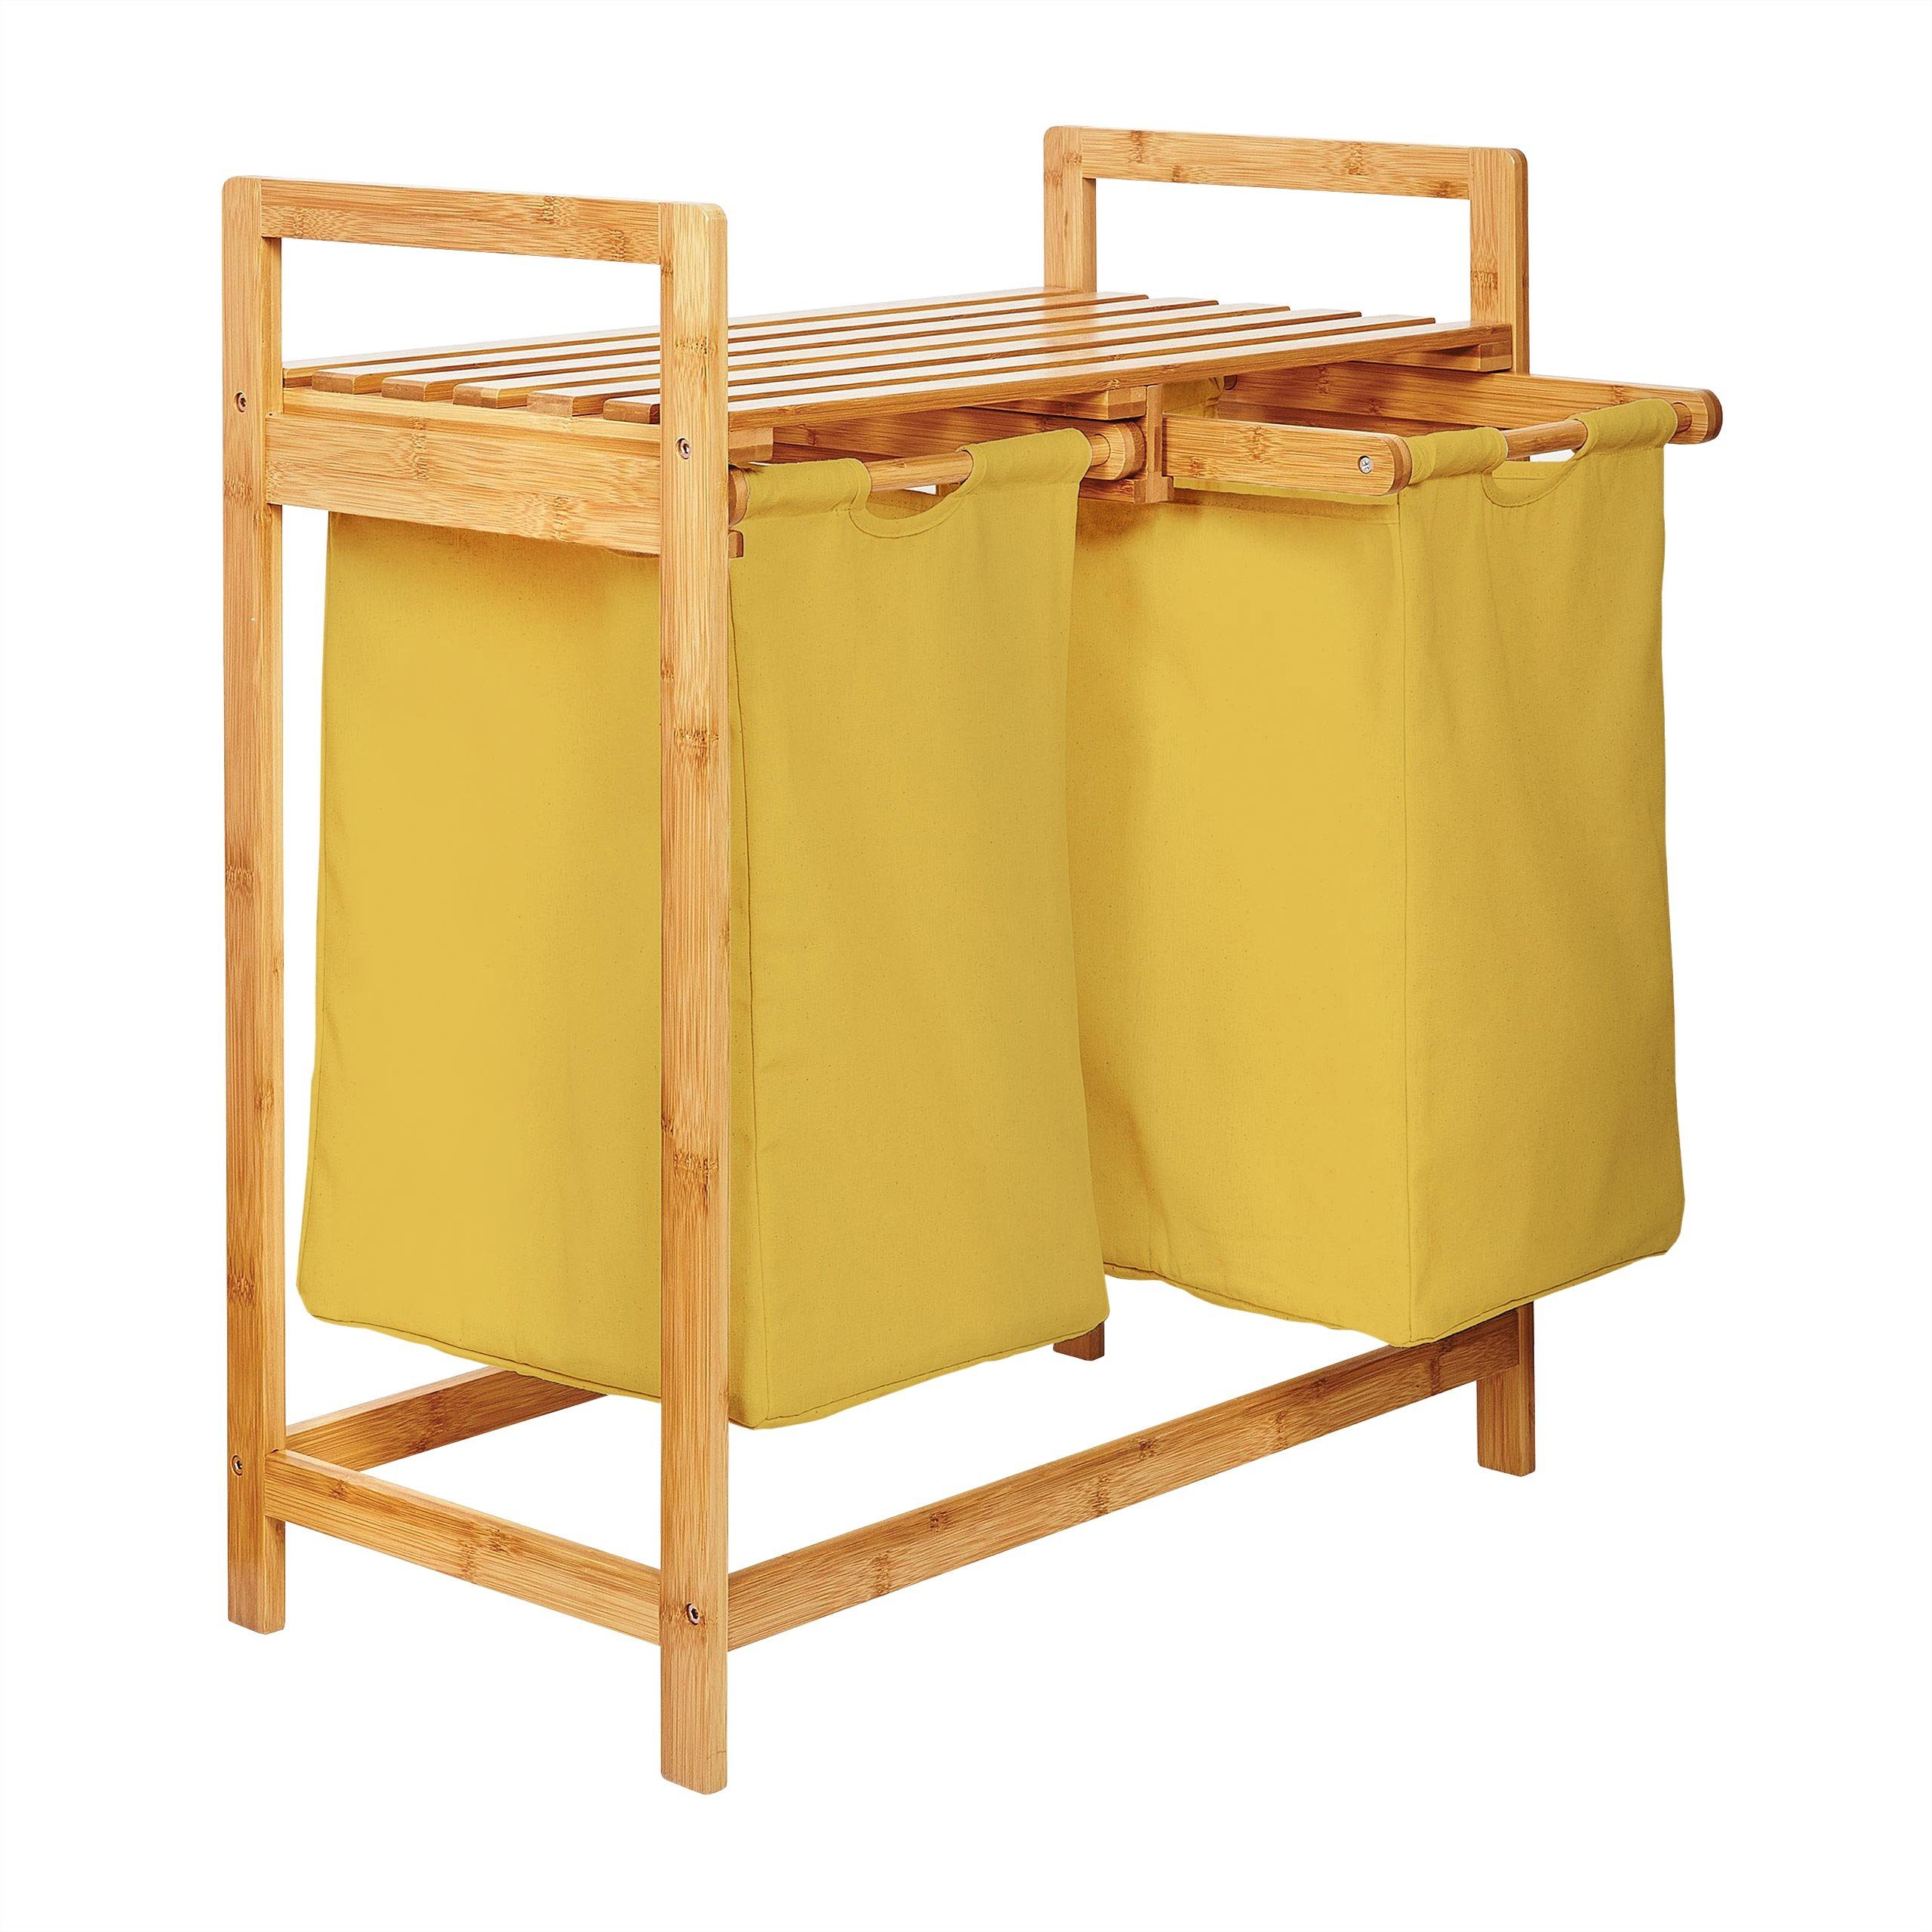 Lumaland Ausziehwäschekorb Bambus Wäschekorb – 2 Wäschesäcke – 73x64x33cm (Sitzbank + Wäschekorb), stabiler Wäschesammler mit Deckel